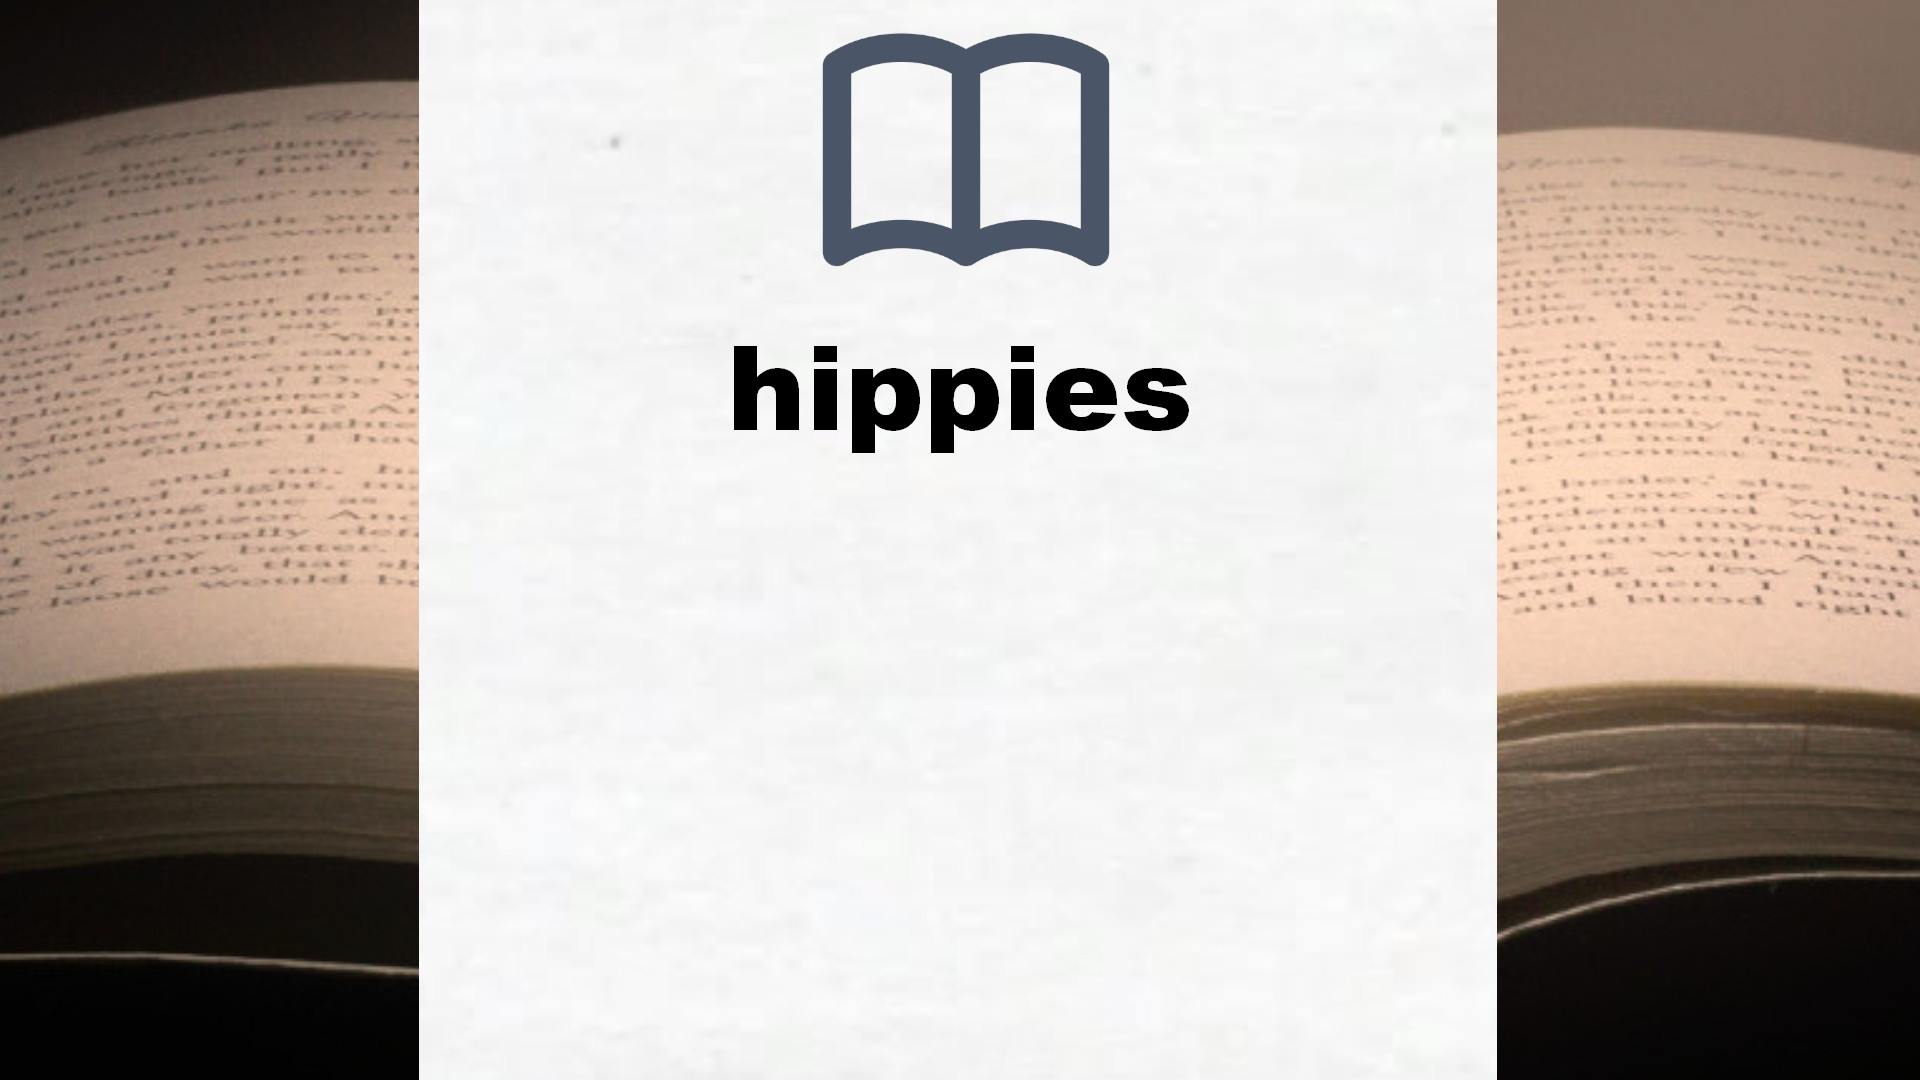 Libros sobre hippies